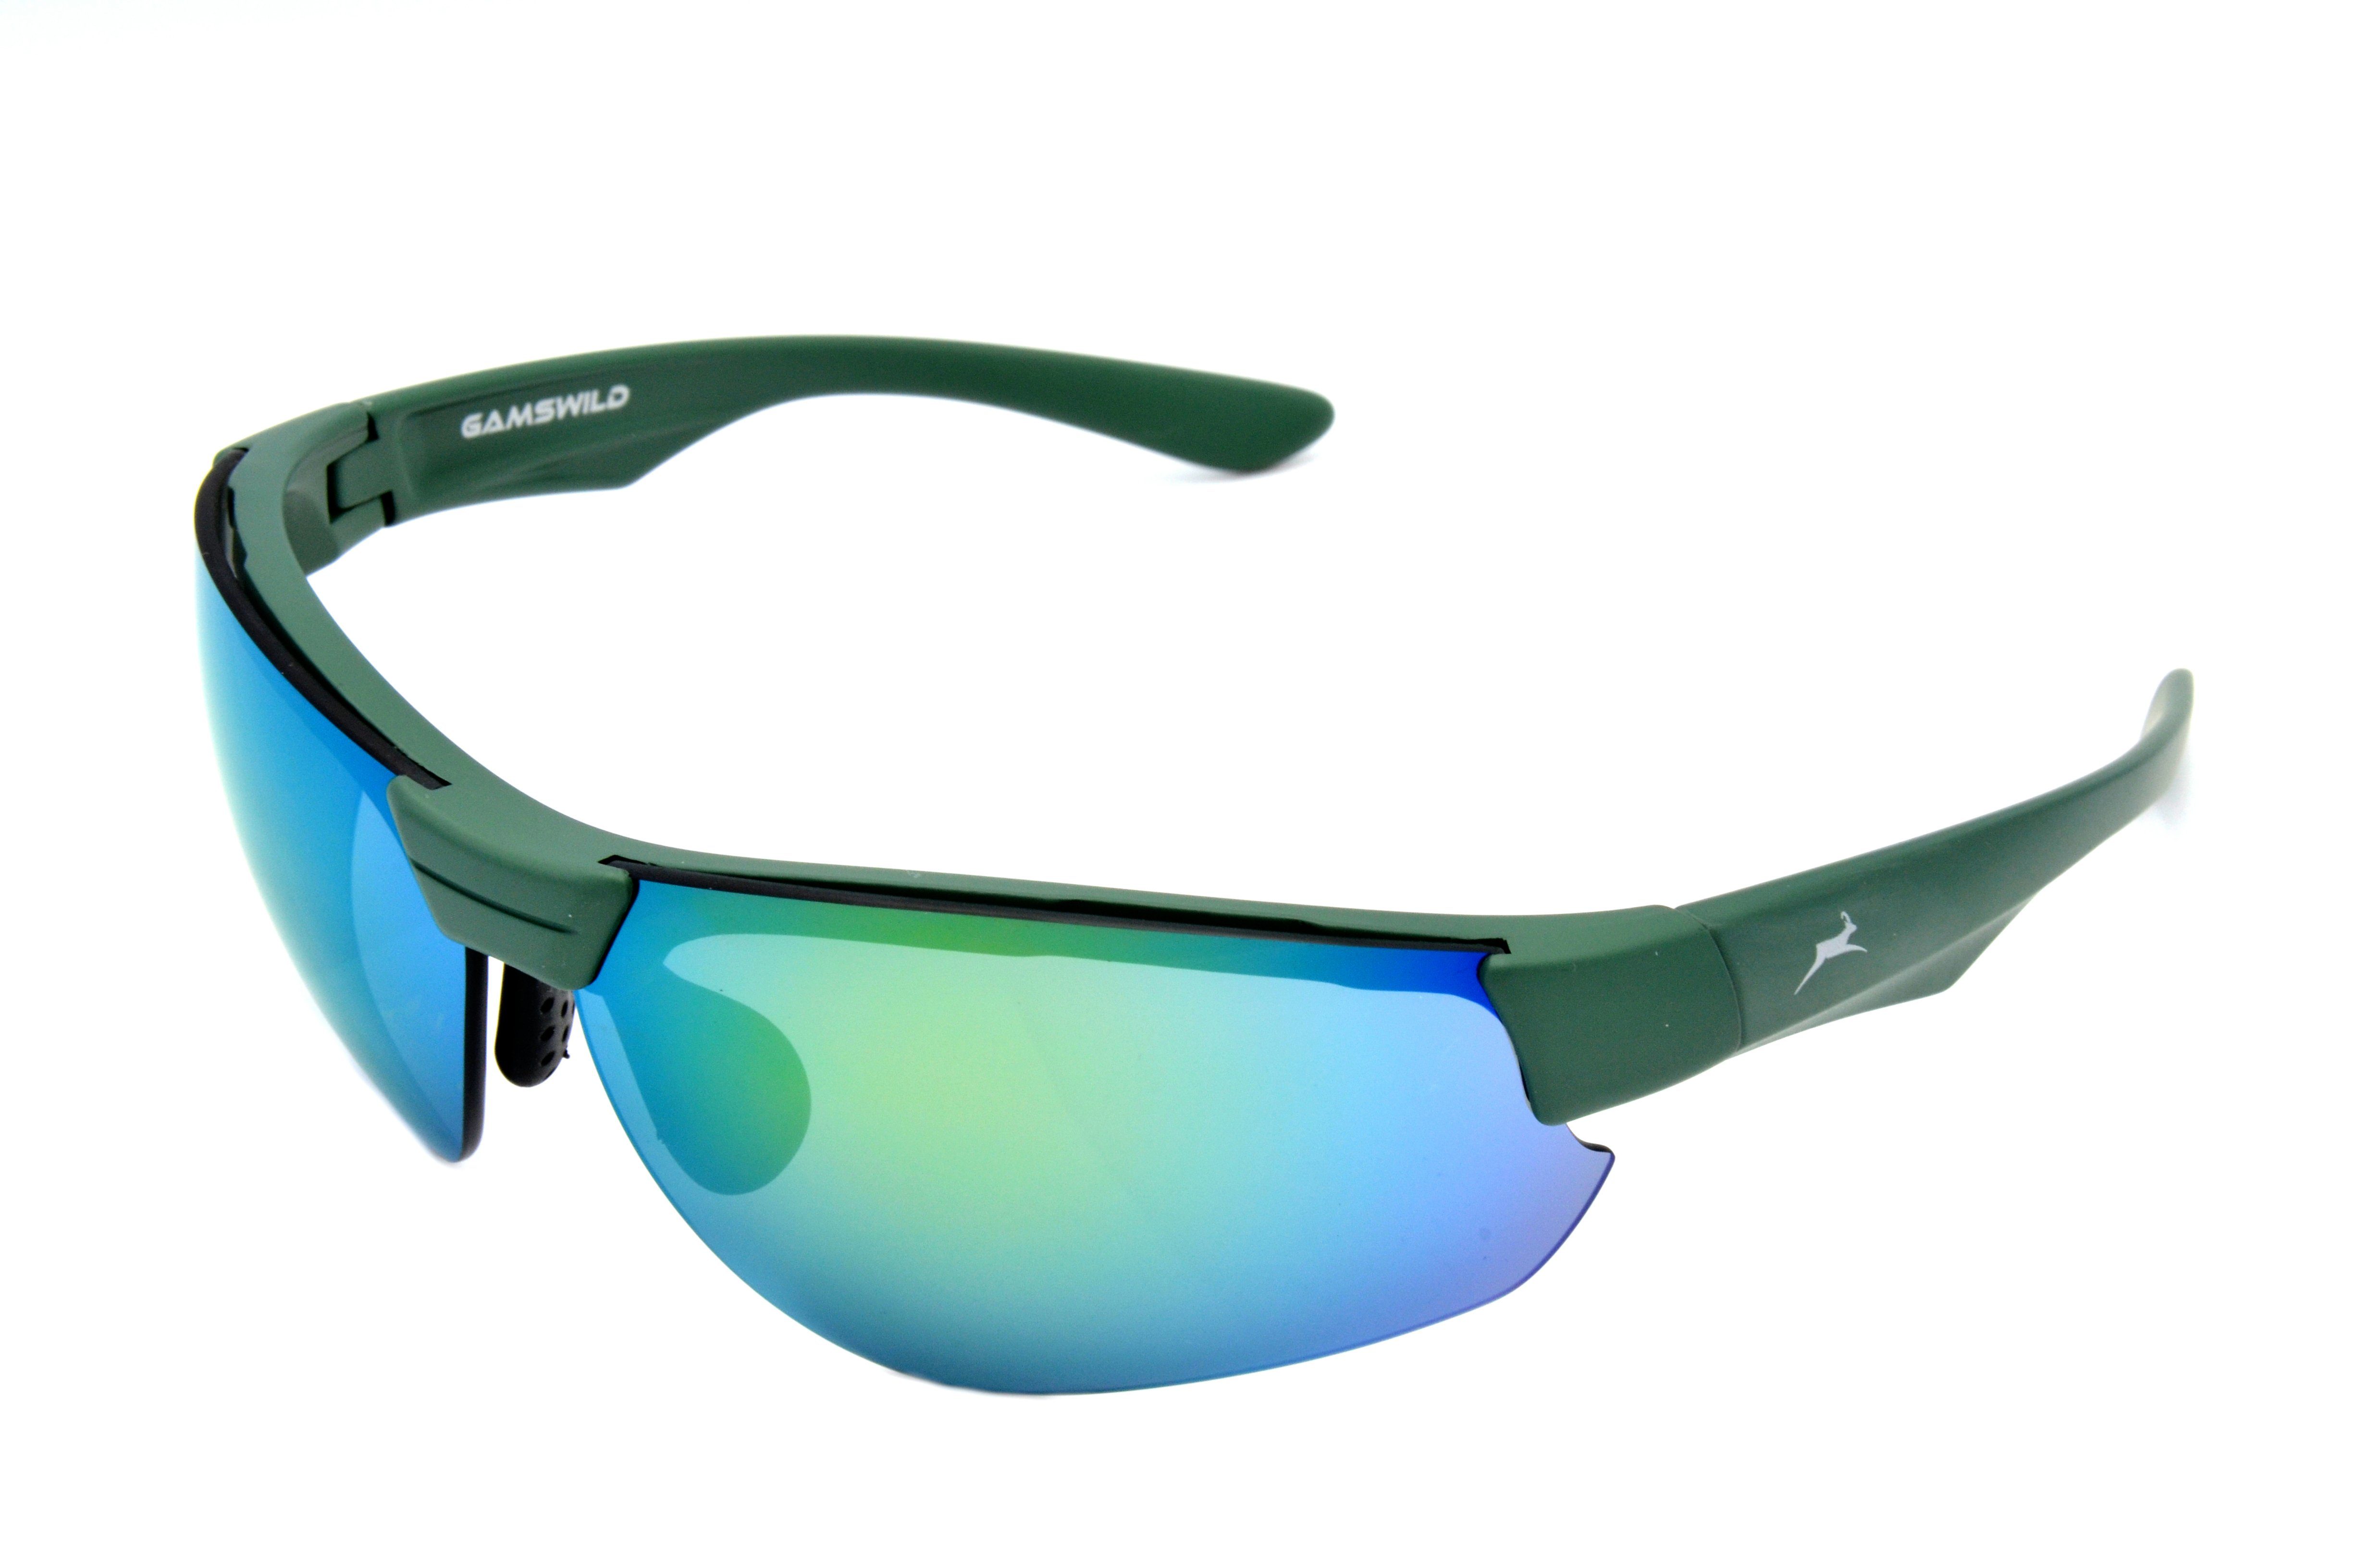 Gamswild Sportbrille WS3032 Sonnenbrille Damen Herren Fahrradbrille Skibrille Unisex, blau, grün, weiß, Halbrahmenbrille